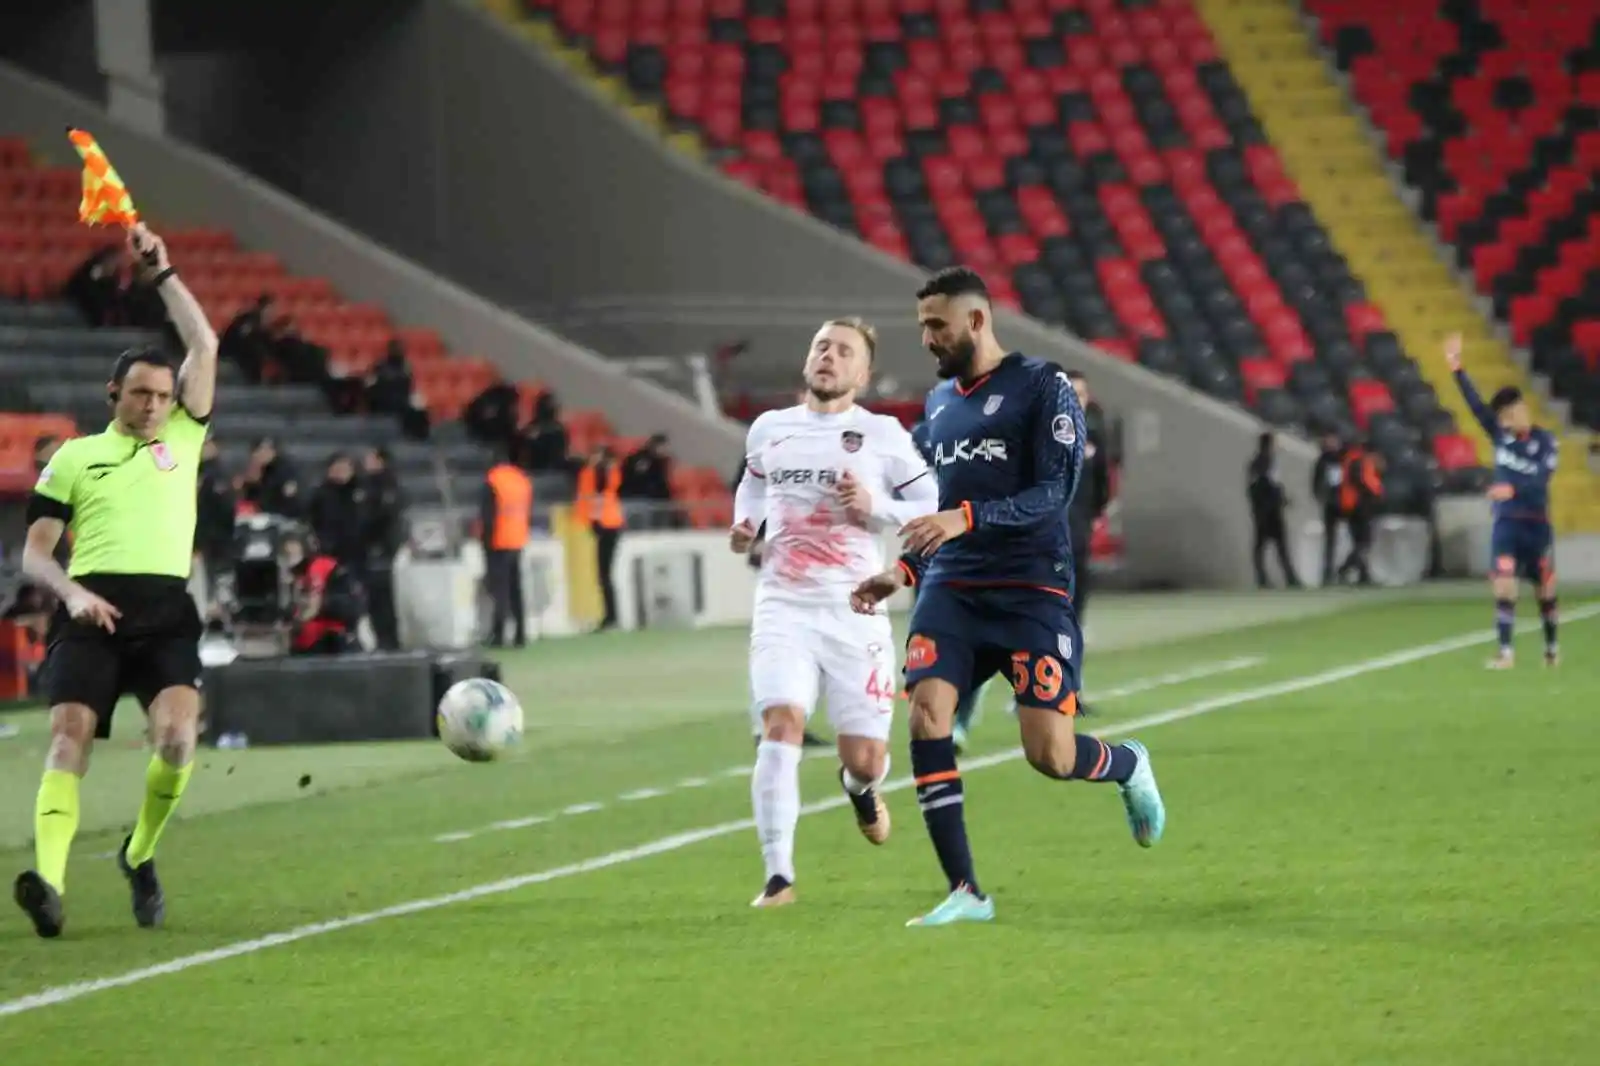 Spor Toto Süper Lig: Gaziantep FK: 1 - Başakşehir: 1 (Maç Sonucu)
